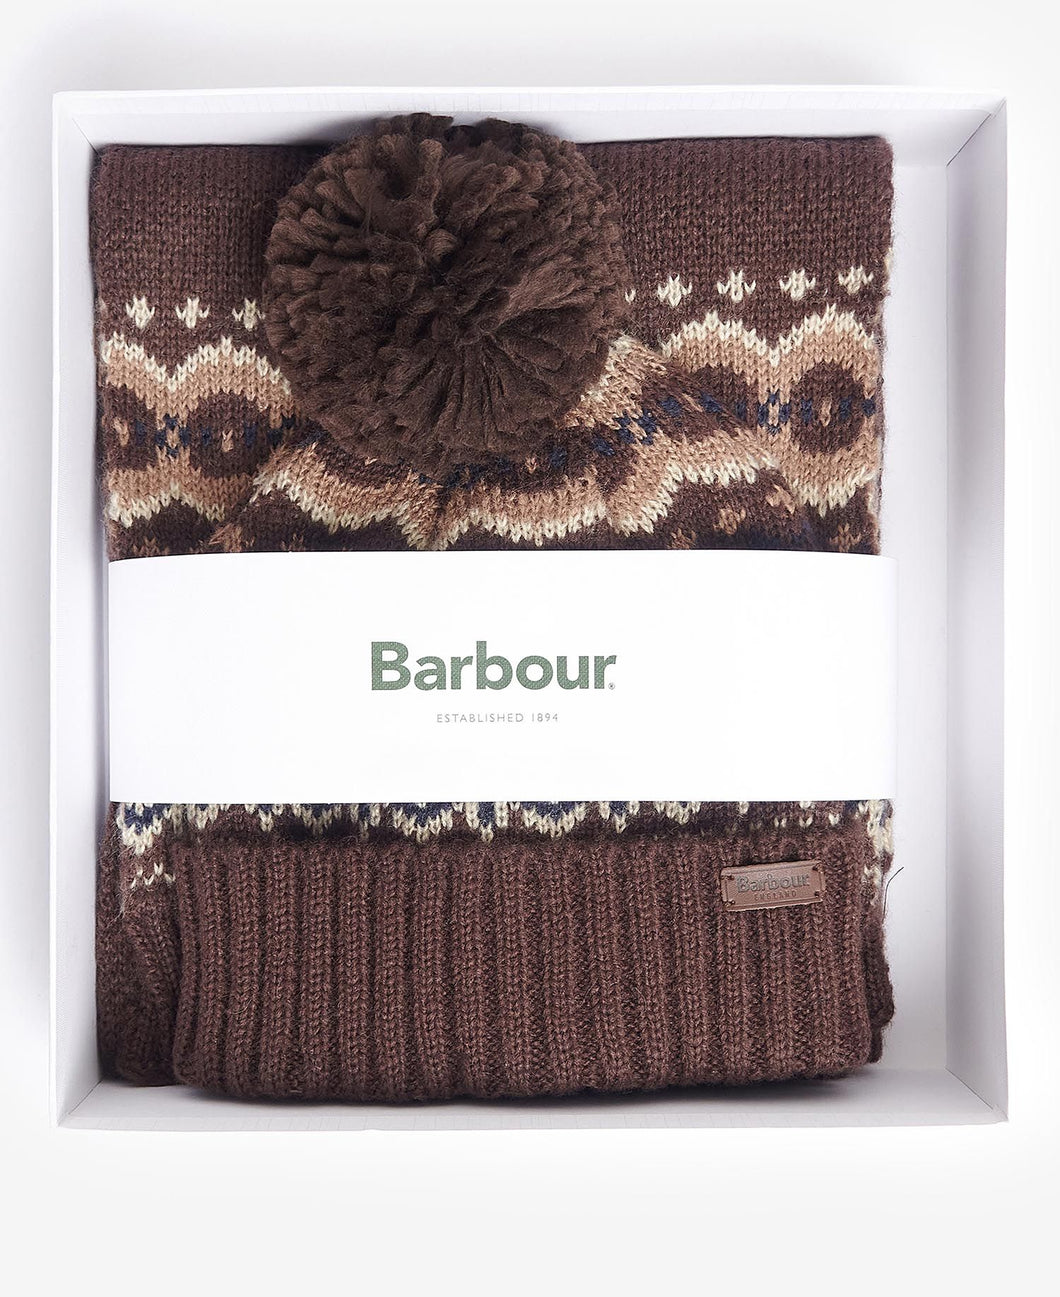 Barbour Fair Isle Beanie & Scarf Gift Set